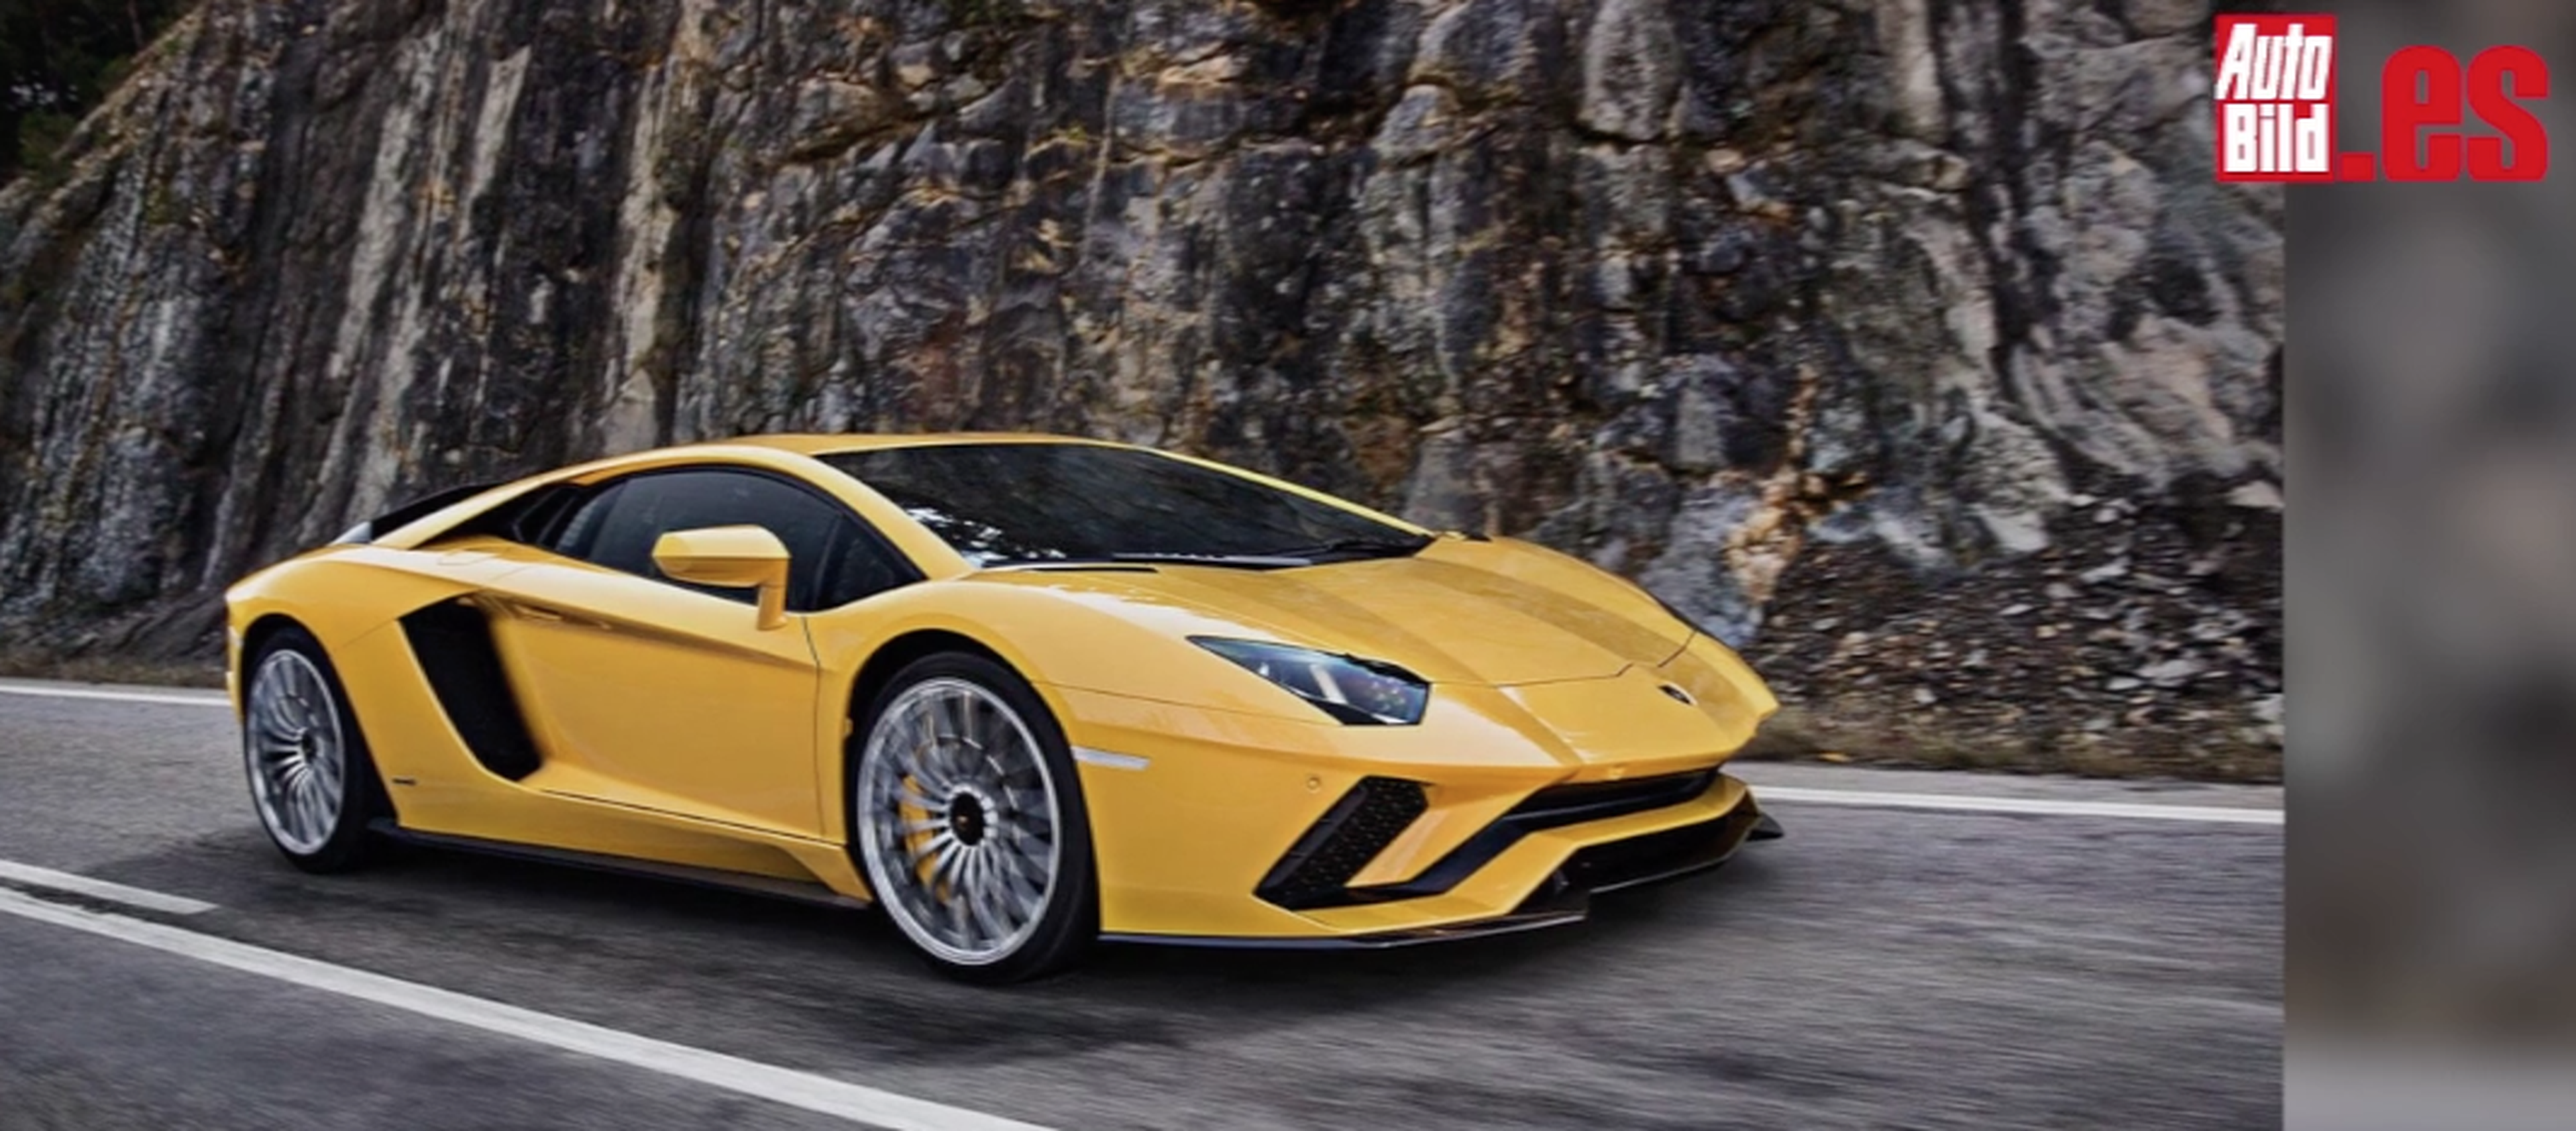 VÍDEO: Lamborghini Aventador S, ¡todos los datos!